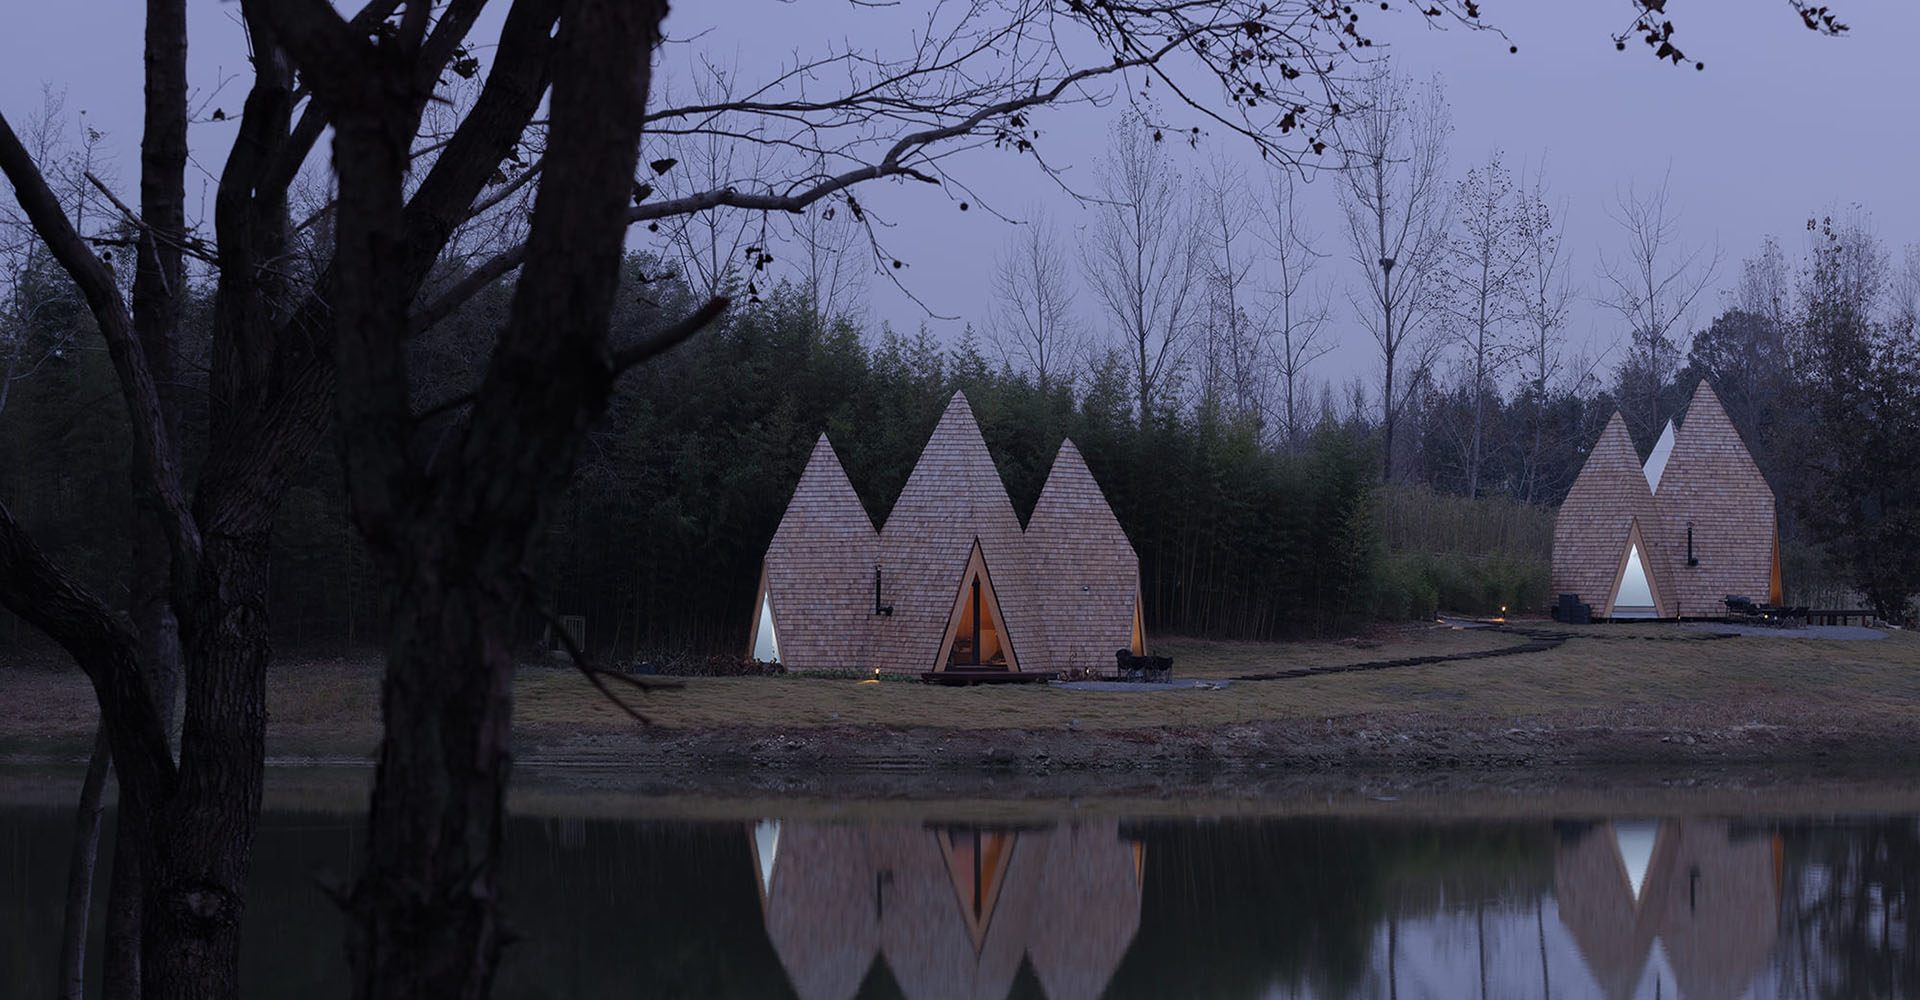 The Sprite Cabin - в Китае появились сборные минидома кристаллической формы для отдыха на природе